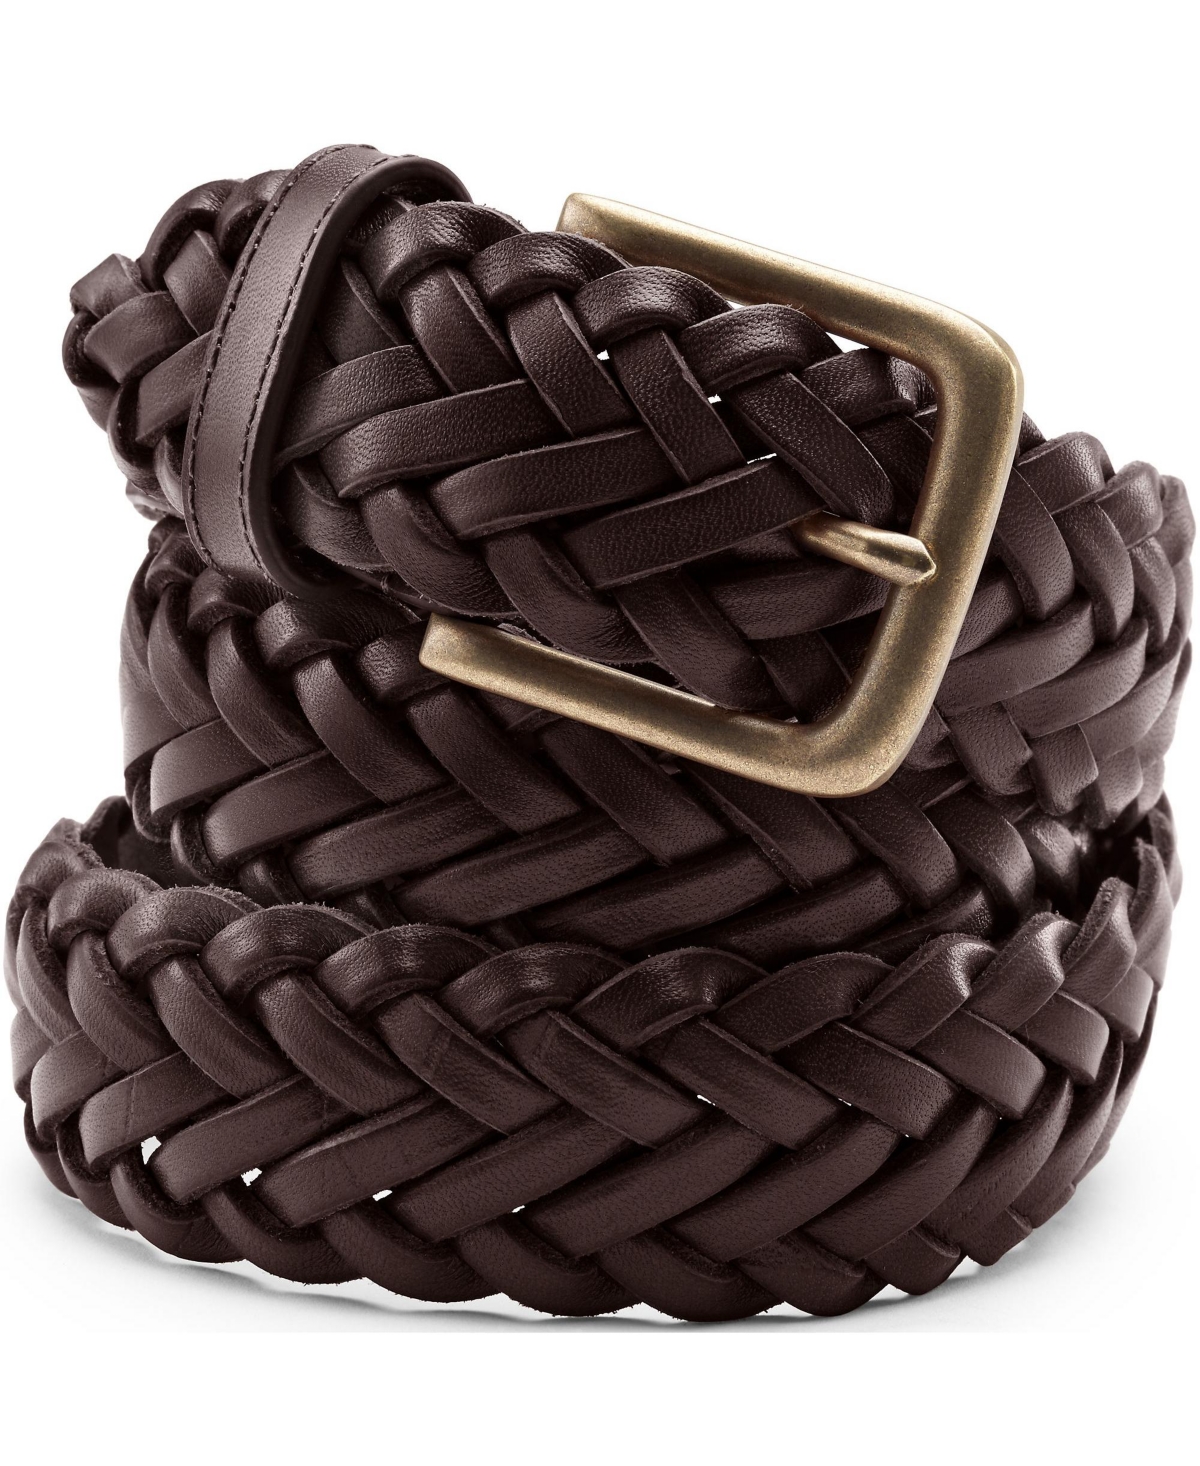 Men's Leather Braid Belt - Dark brown